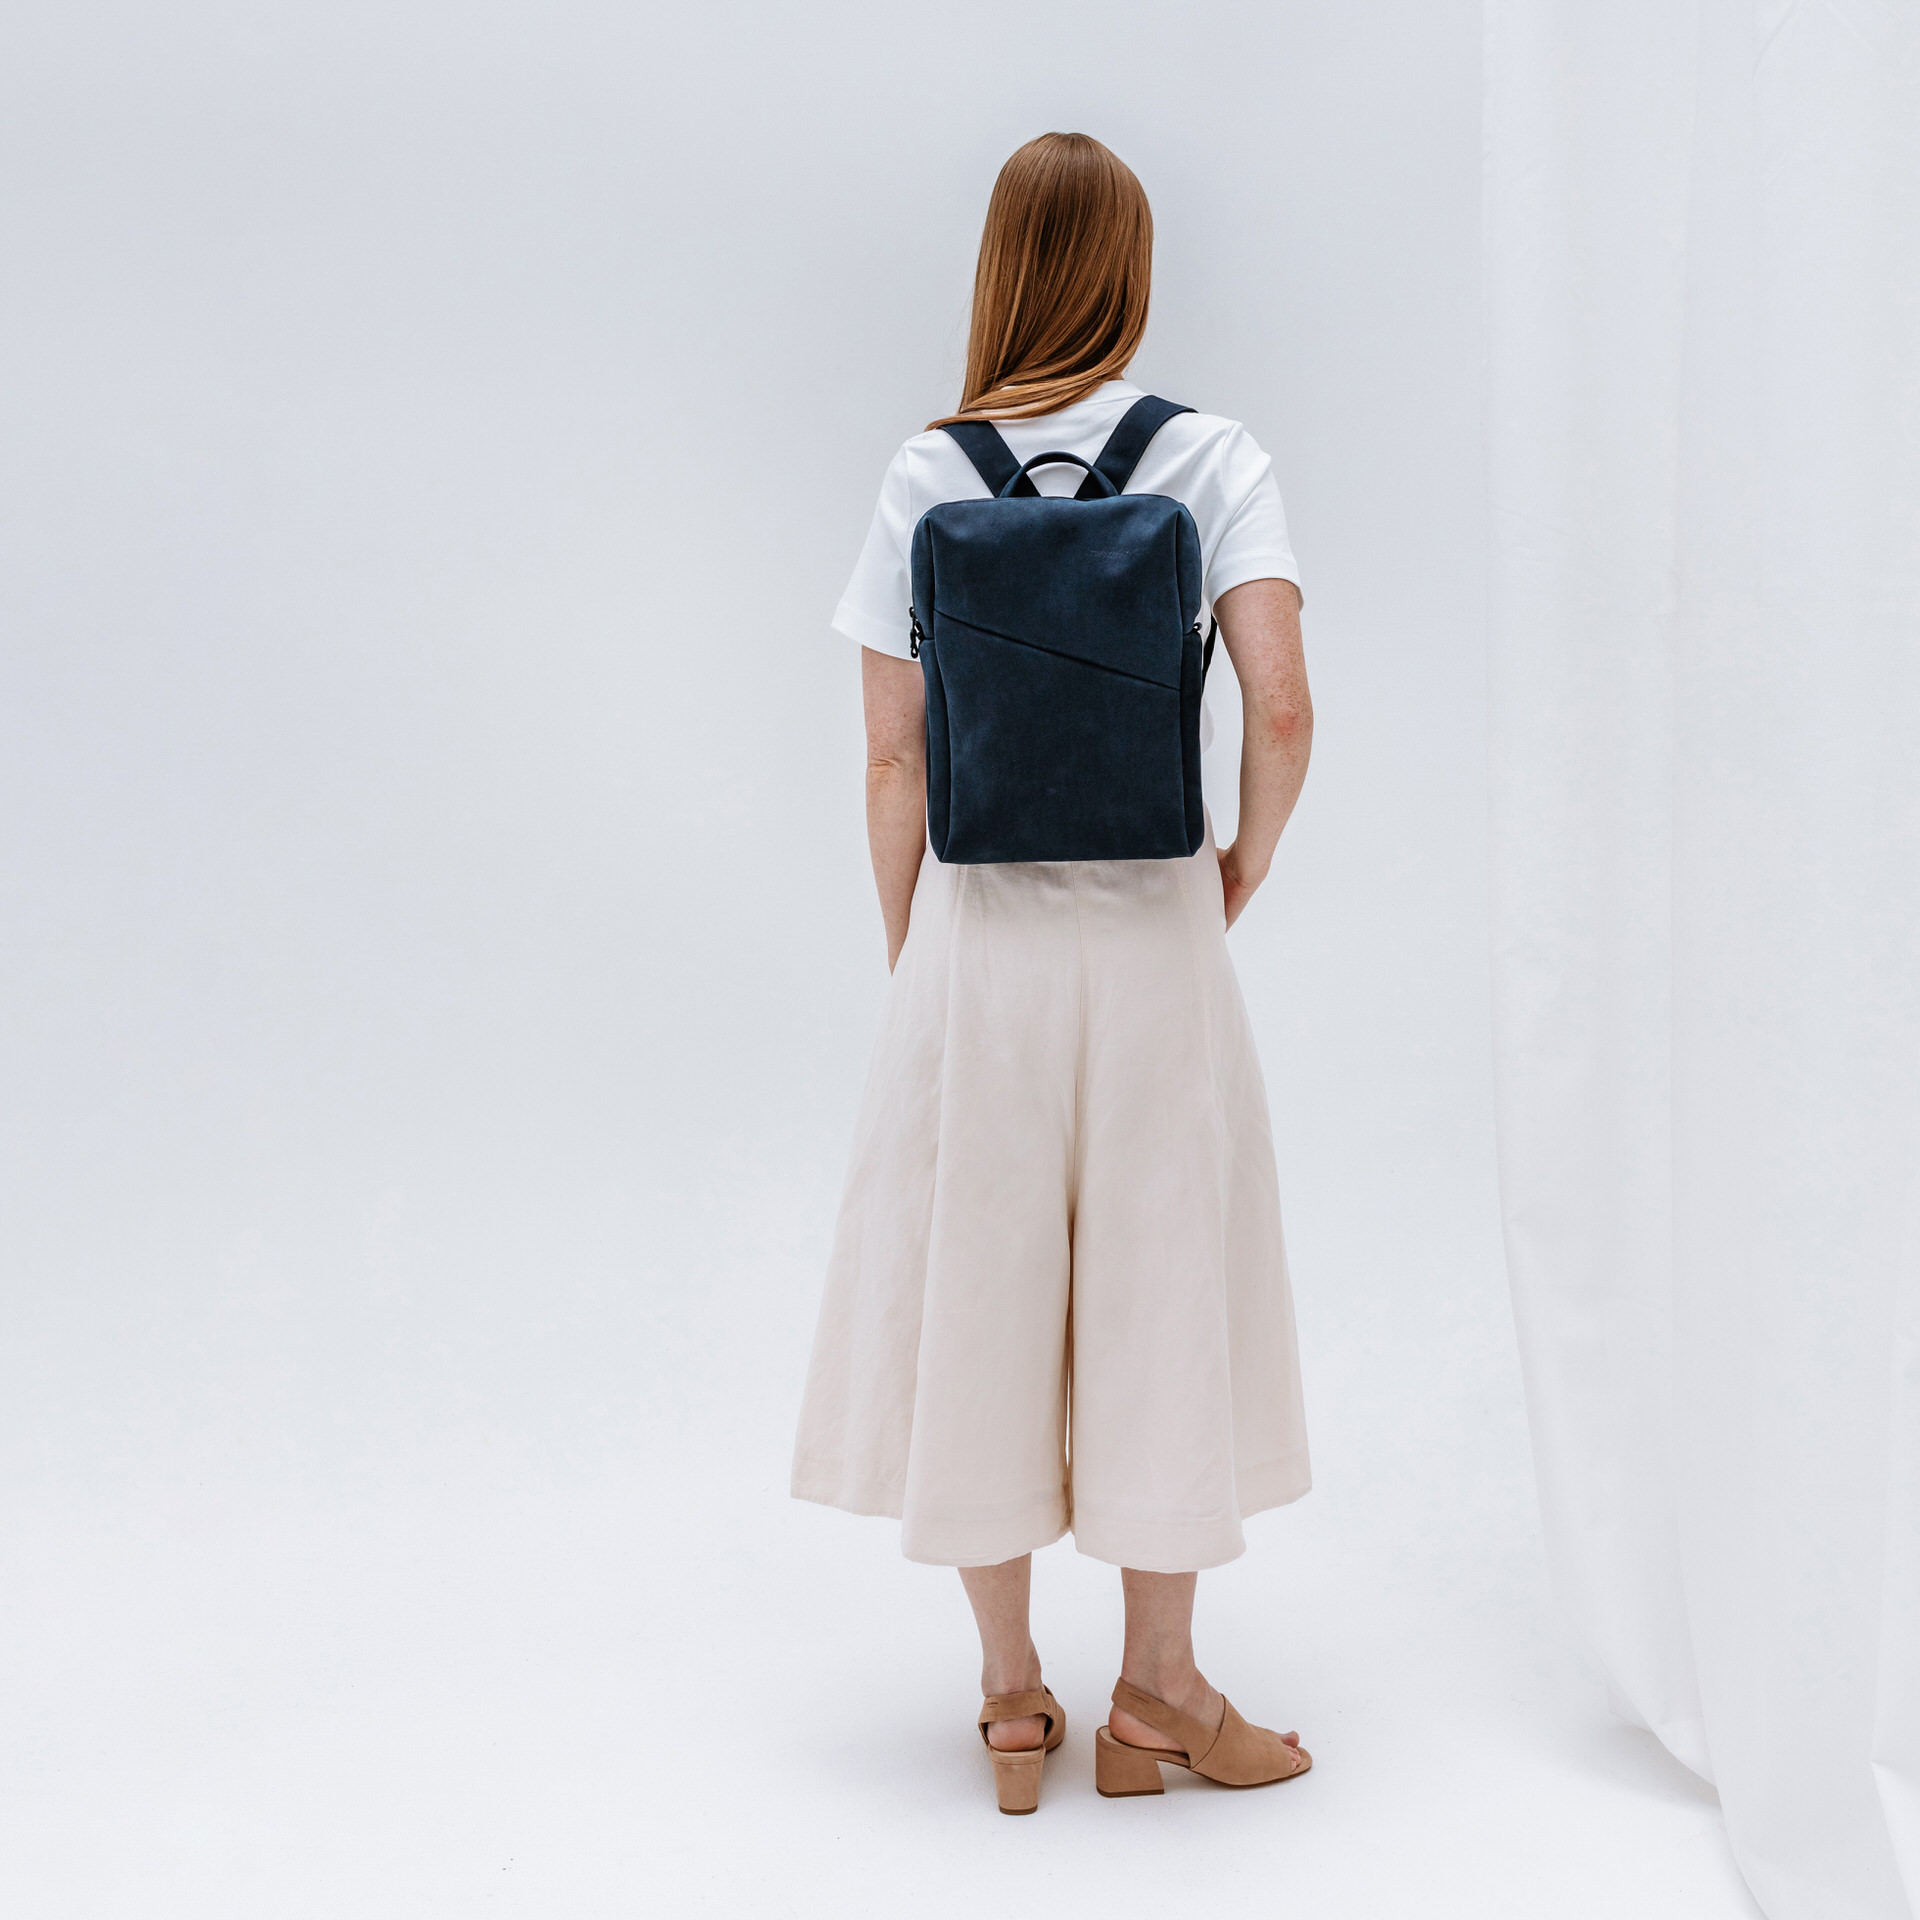 Model trägt Rucksack Neo Small in Dunkelblau aus nachhaltigem Naturleder.